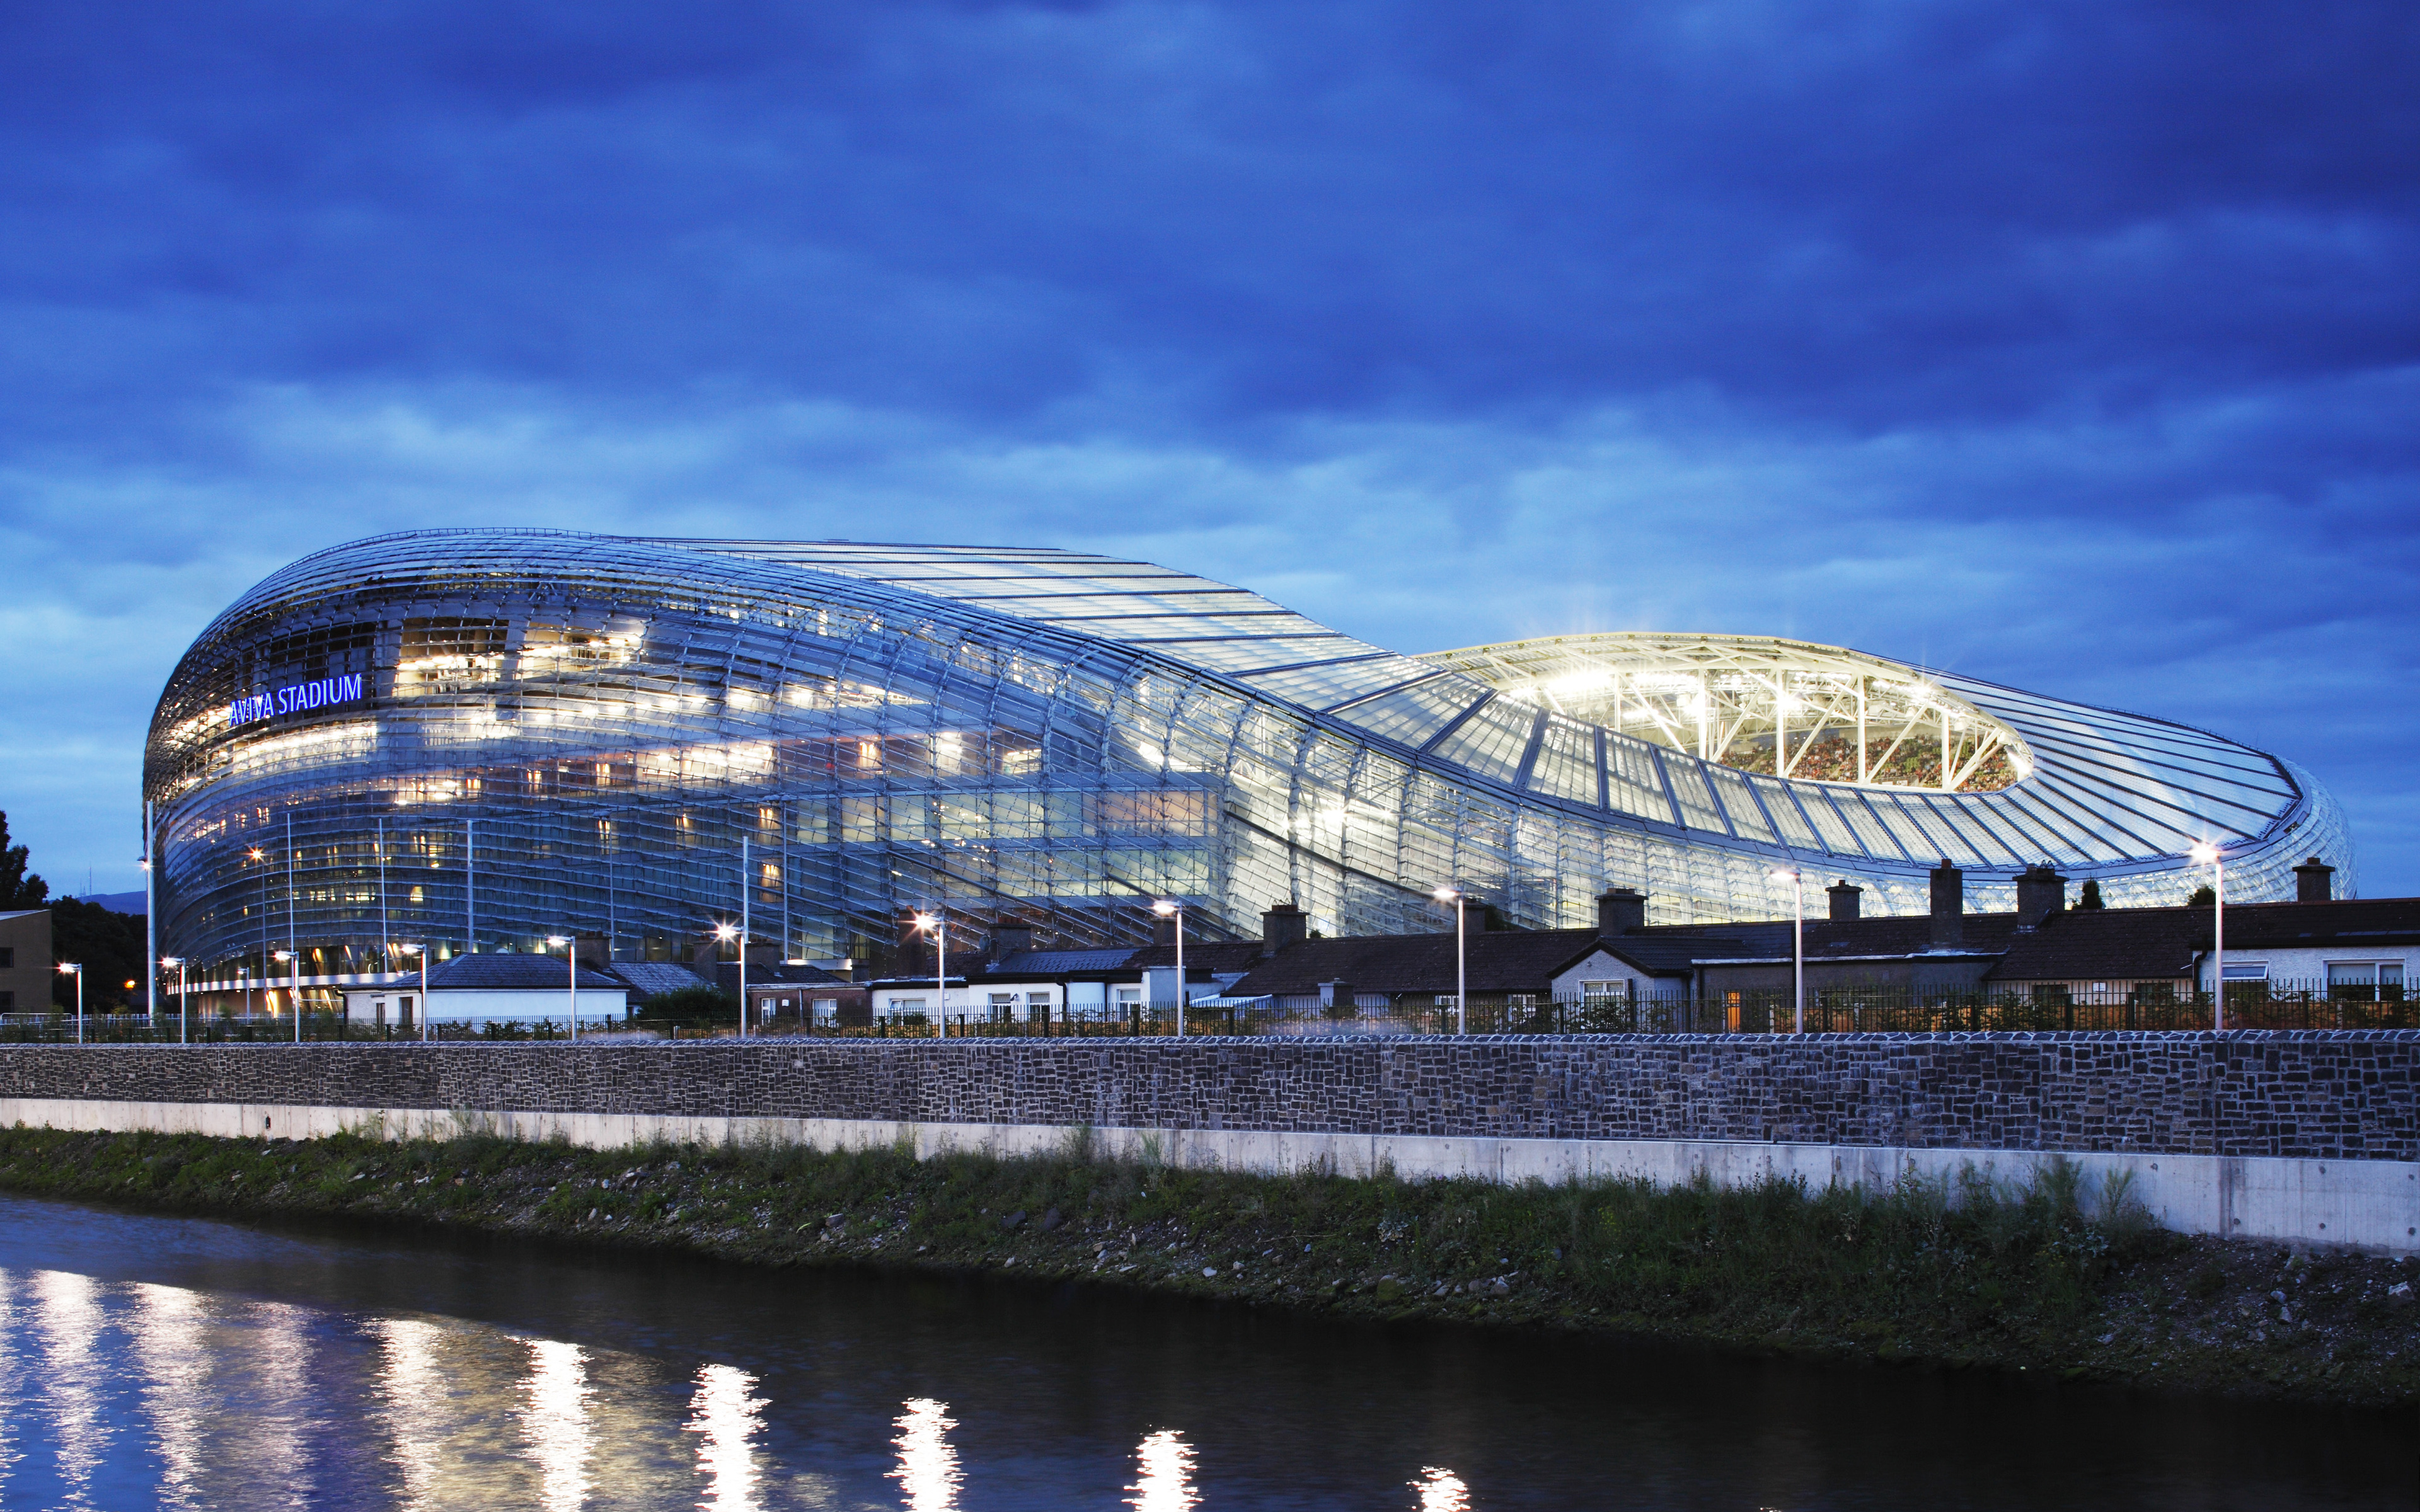 ダウンロード画像 アビバスタジアム ラグビー サッカースタジアム ダブリン アイルランド 現代スポーツアリーナ 4k モダンなデザイン 画面の解像度 3840x2400 壁紙デスクトップ上